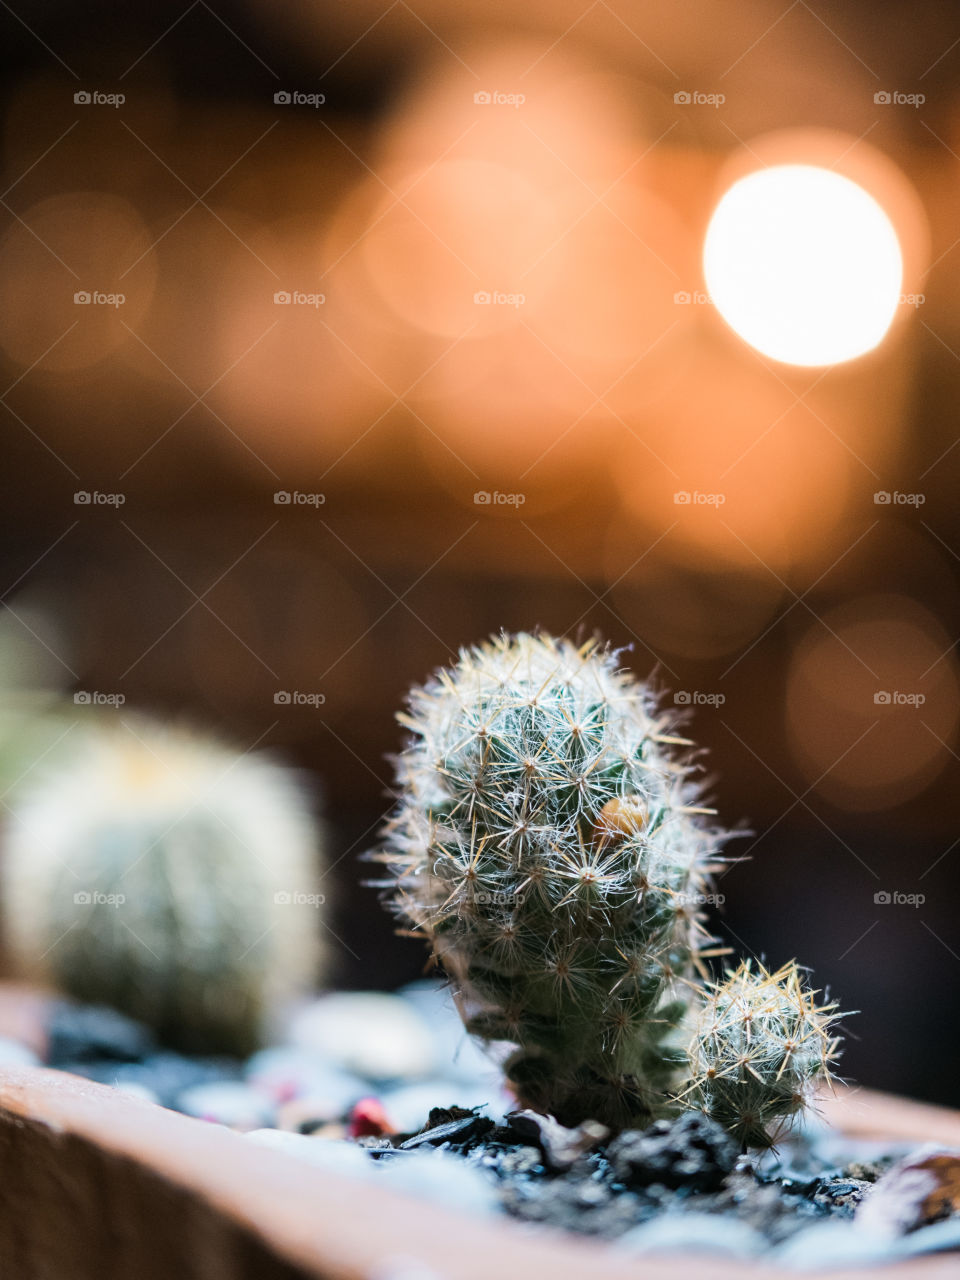 Tiny cactus